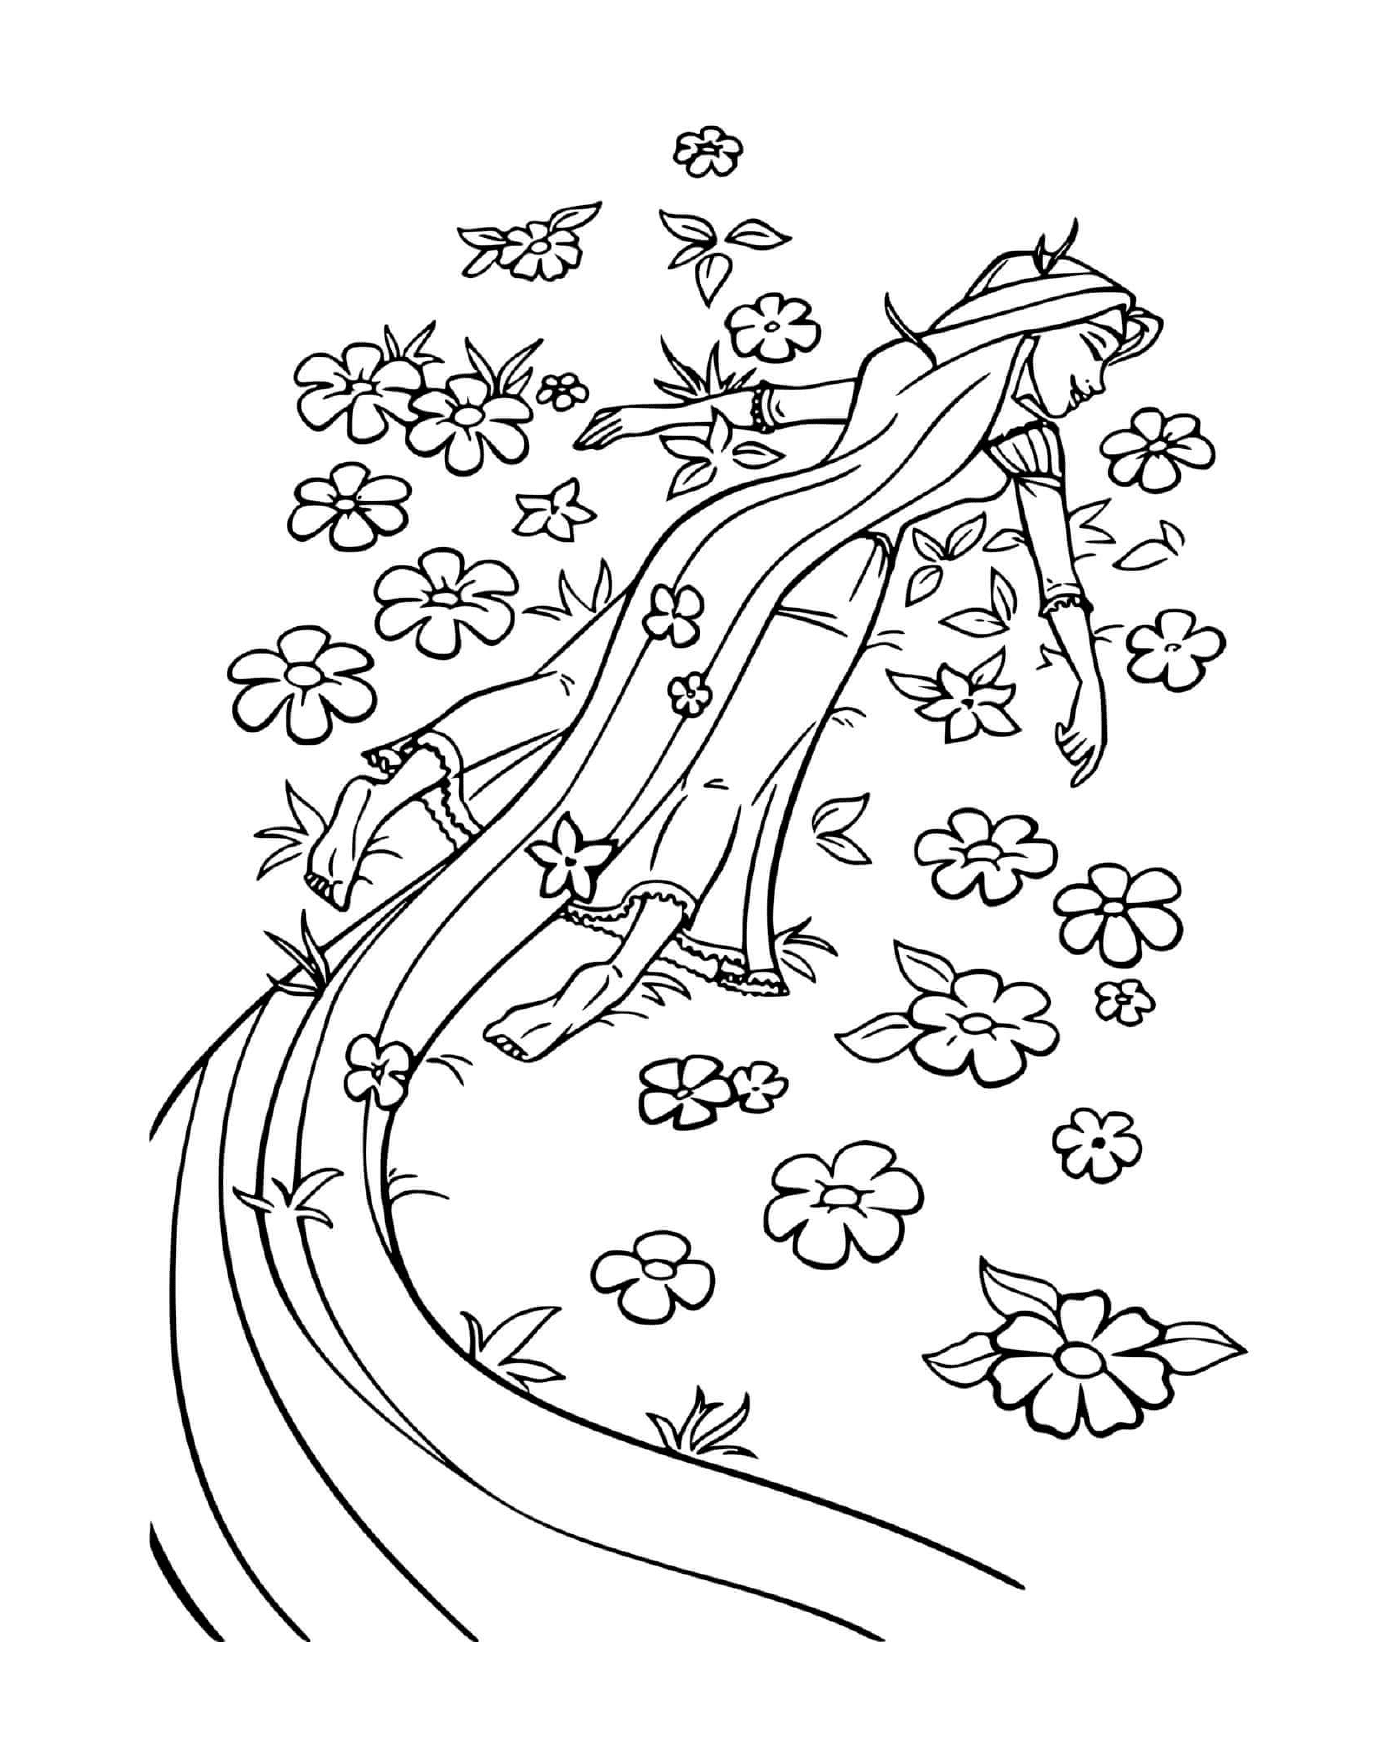 coloriage princesse se couche sur un champ de fleurs pour respirer la nature